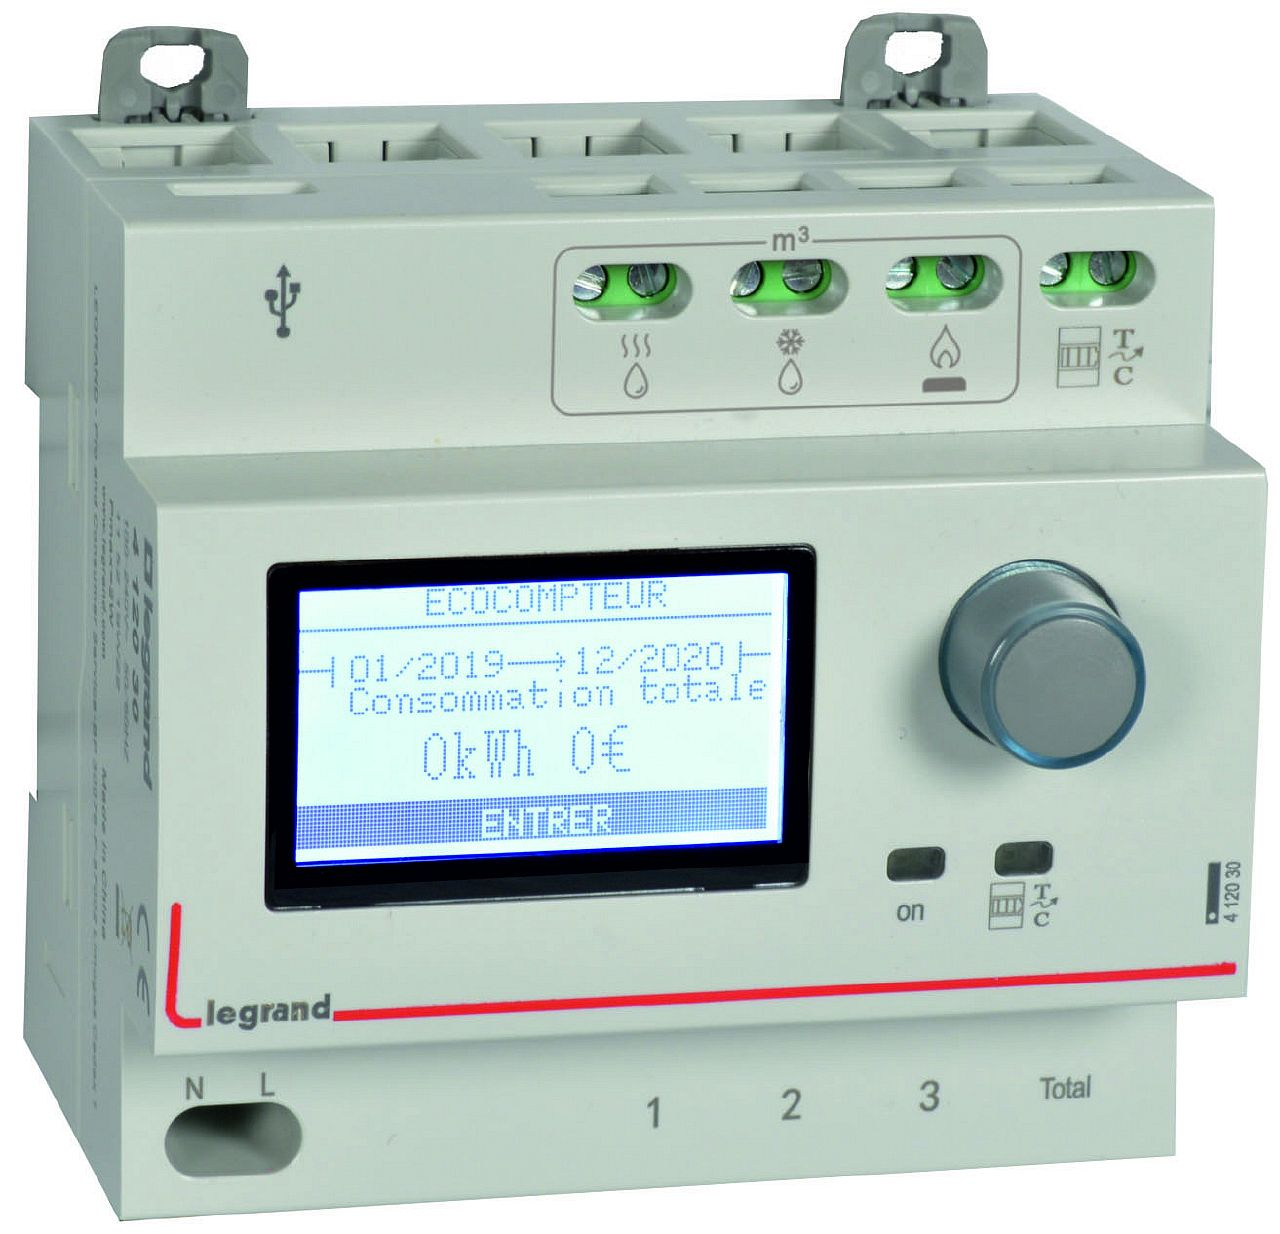 Ecocompteur module pour mesure consommation sur 5 postes 230V~ - 5 modules